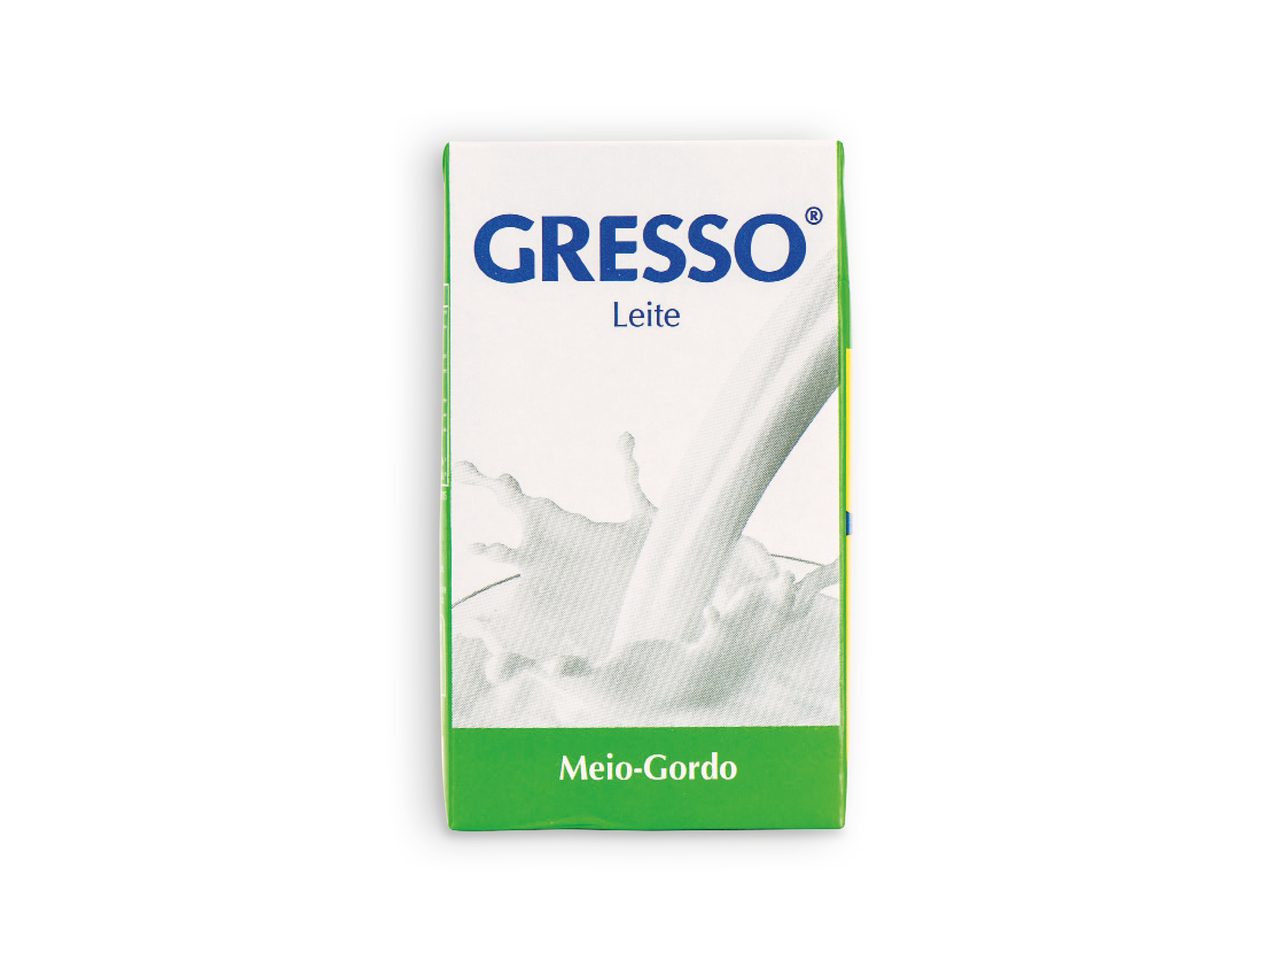 GRESSO(R) Leite Meio-gordo